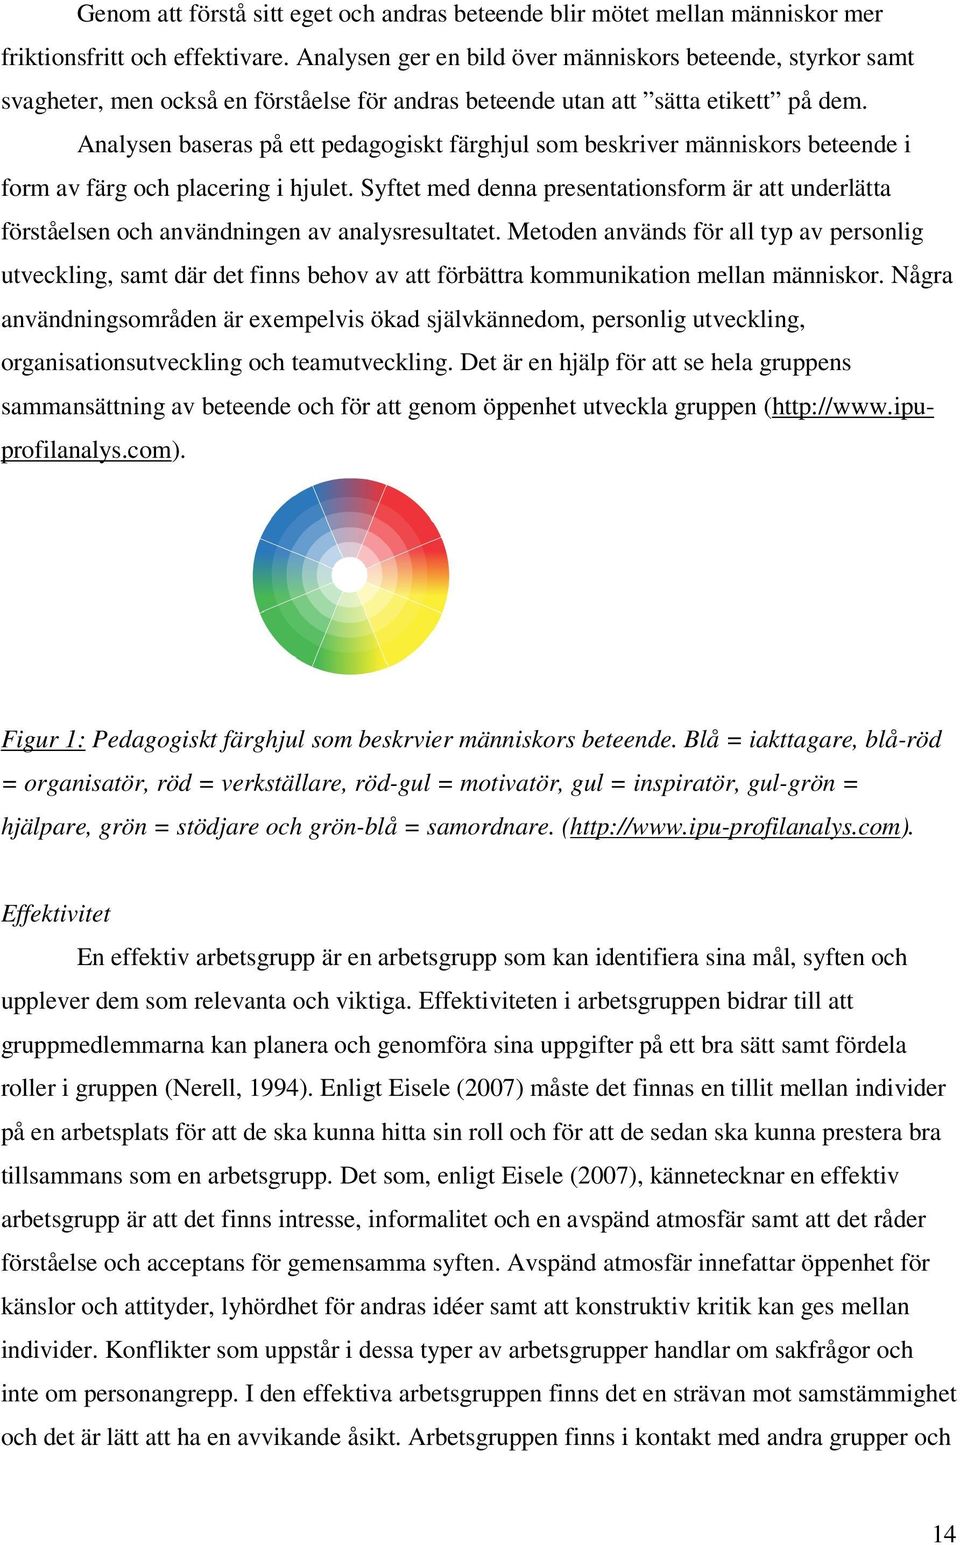 Analysen baseras på ett pedagogiskt färghjul som beskriver människors beteende i form av färg och placering i hjulet.